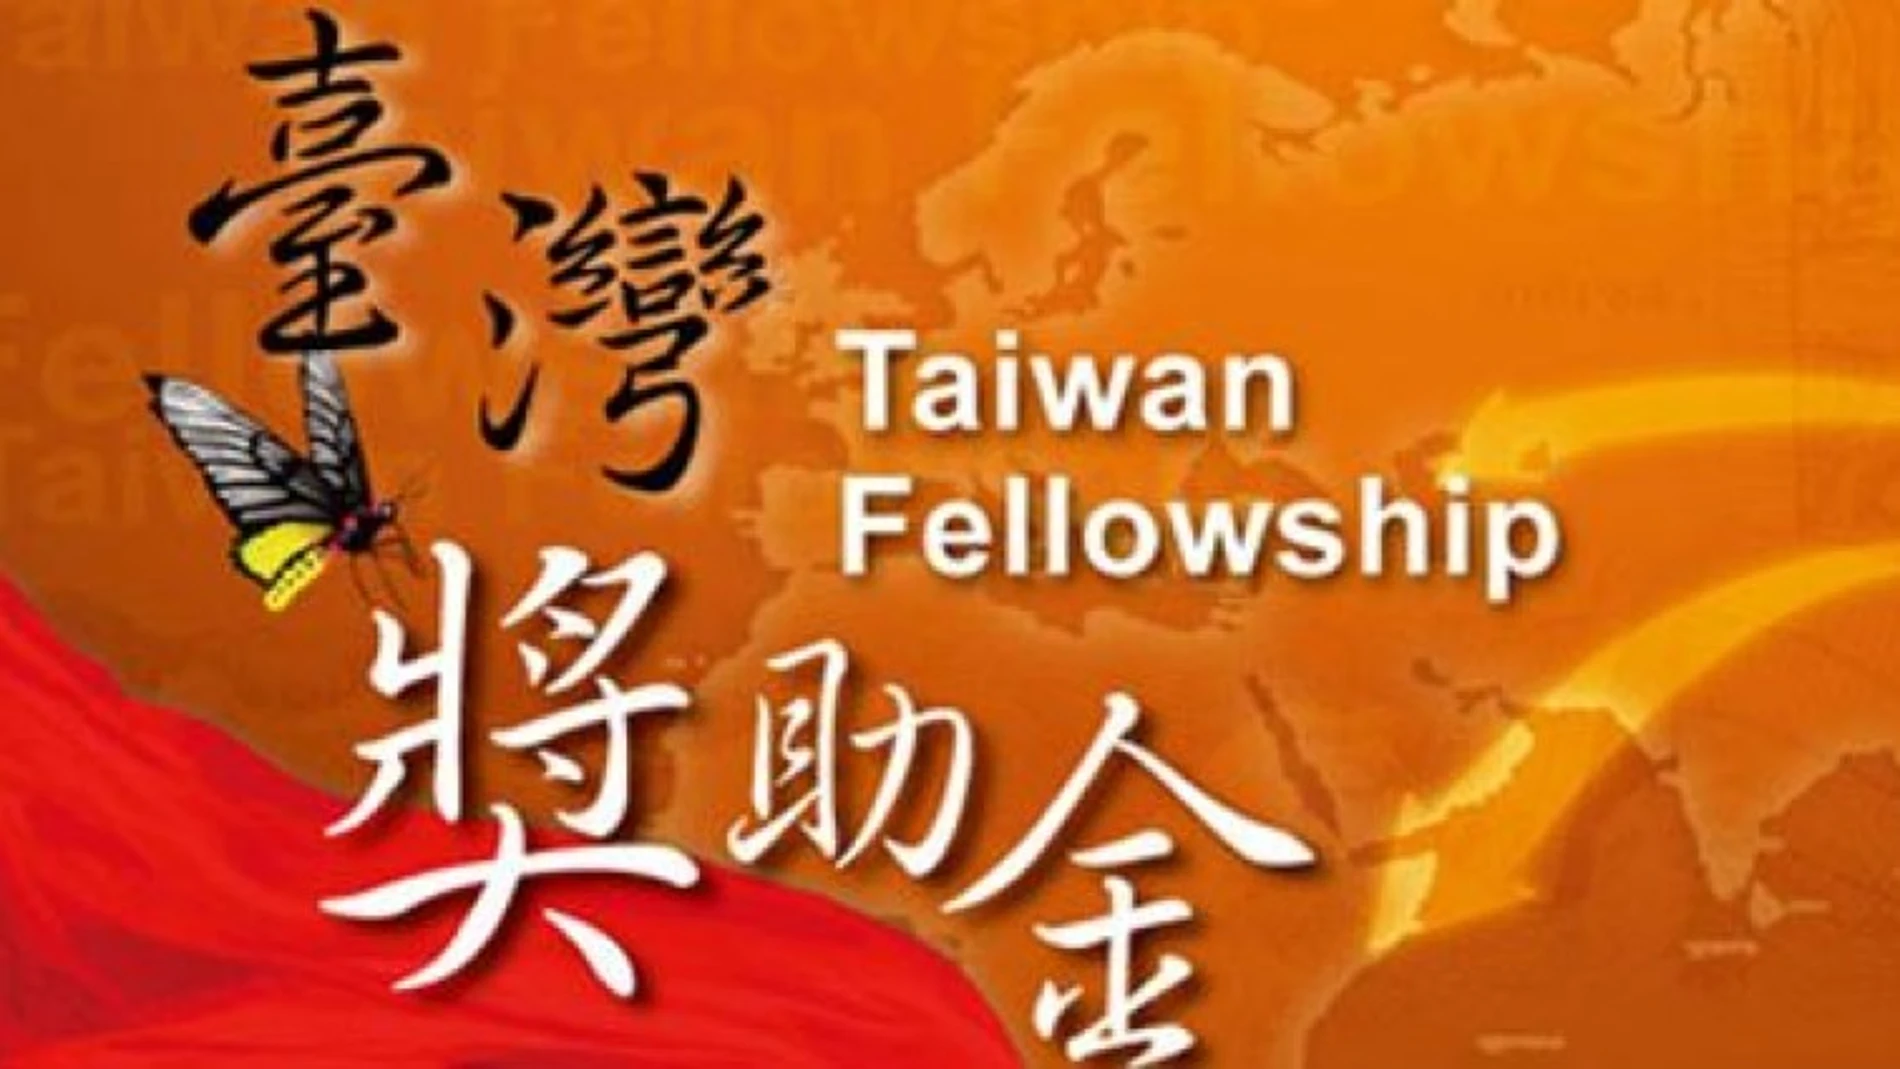 Taiwán ofrece becas de investigación para profesores y académicos extranjeros